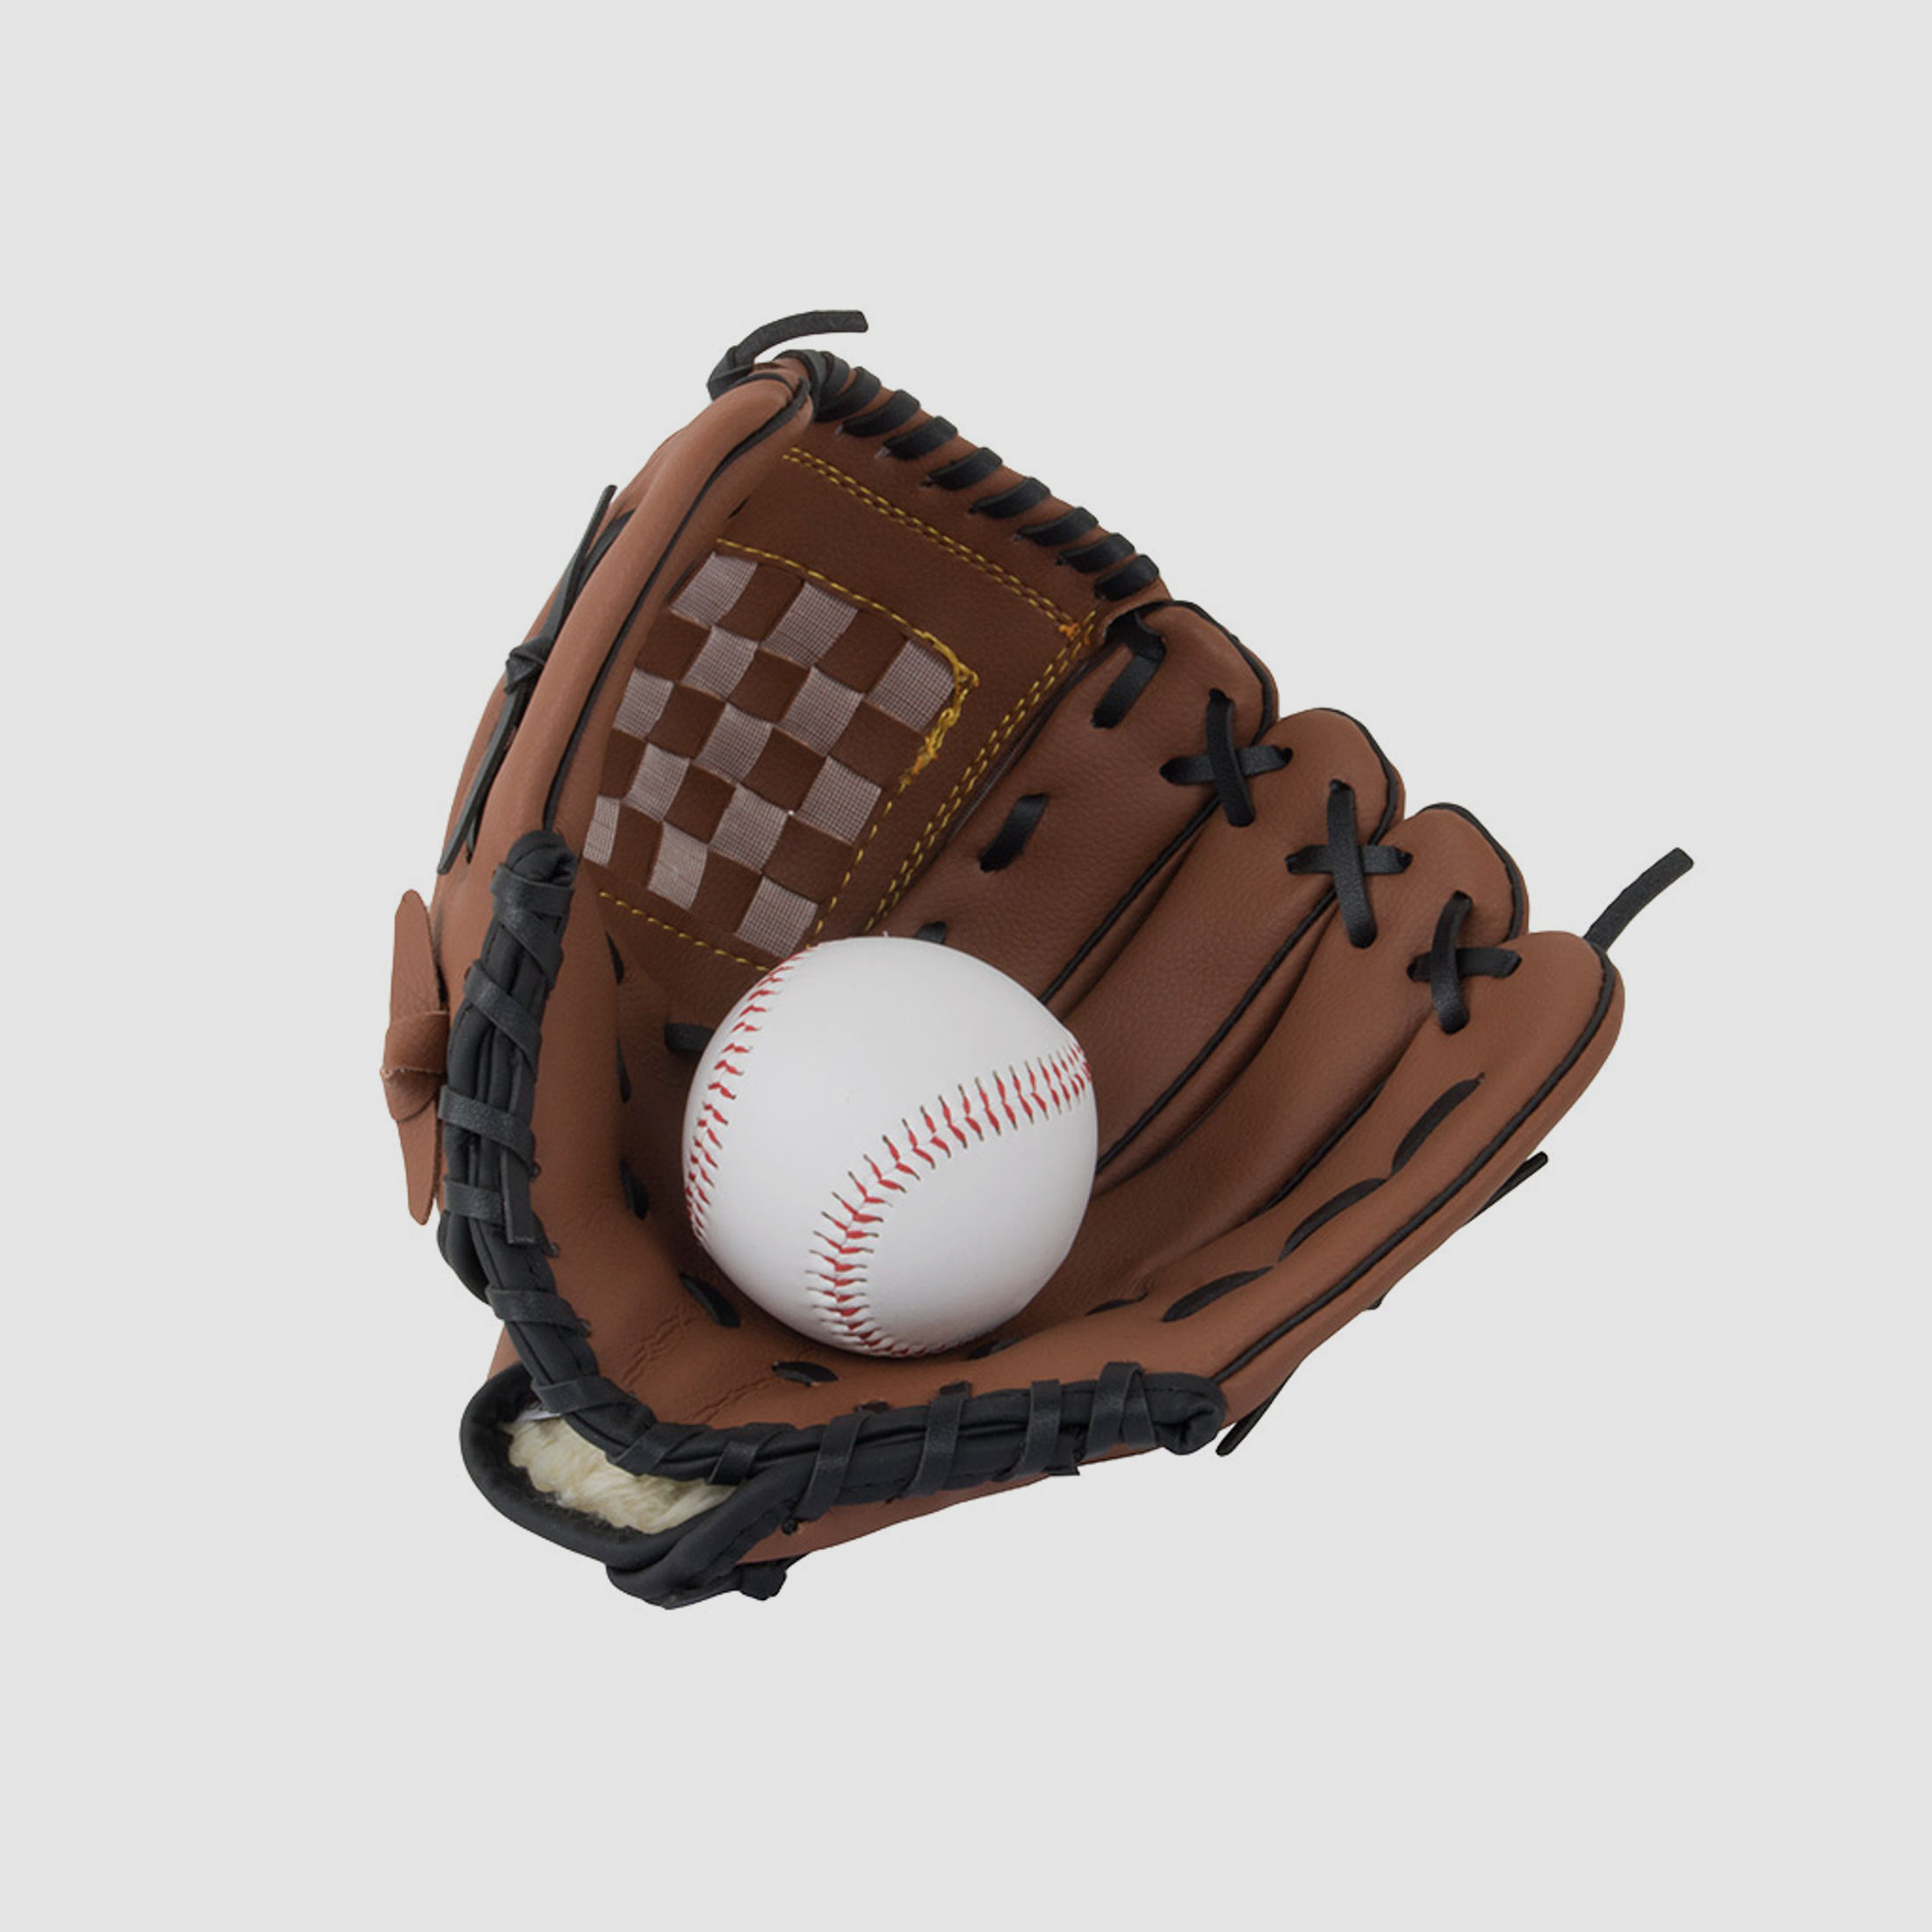 Baseball Handschuh Softball Handschuh grĂ¶Ăźe 10,5 Zoll inklusive Ball 7,2 cm